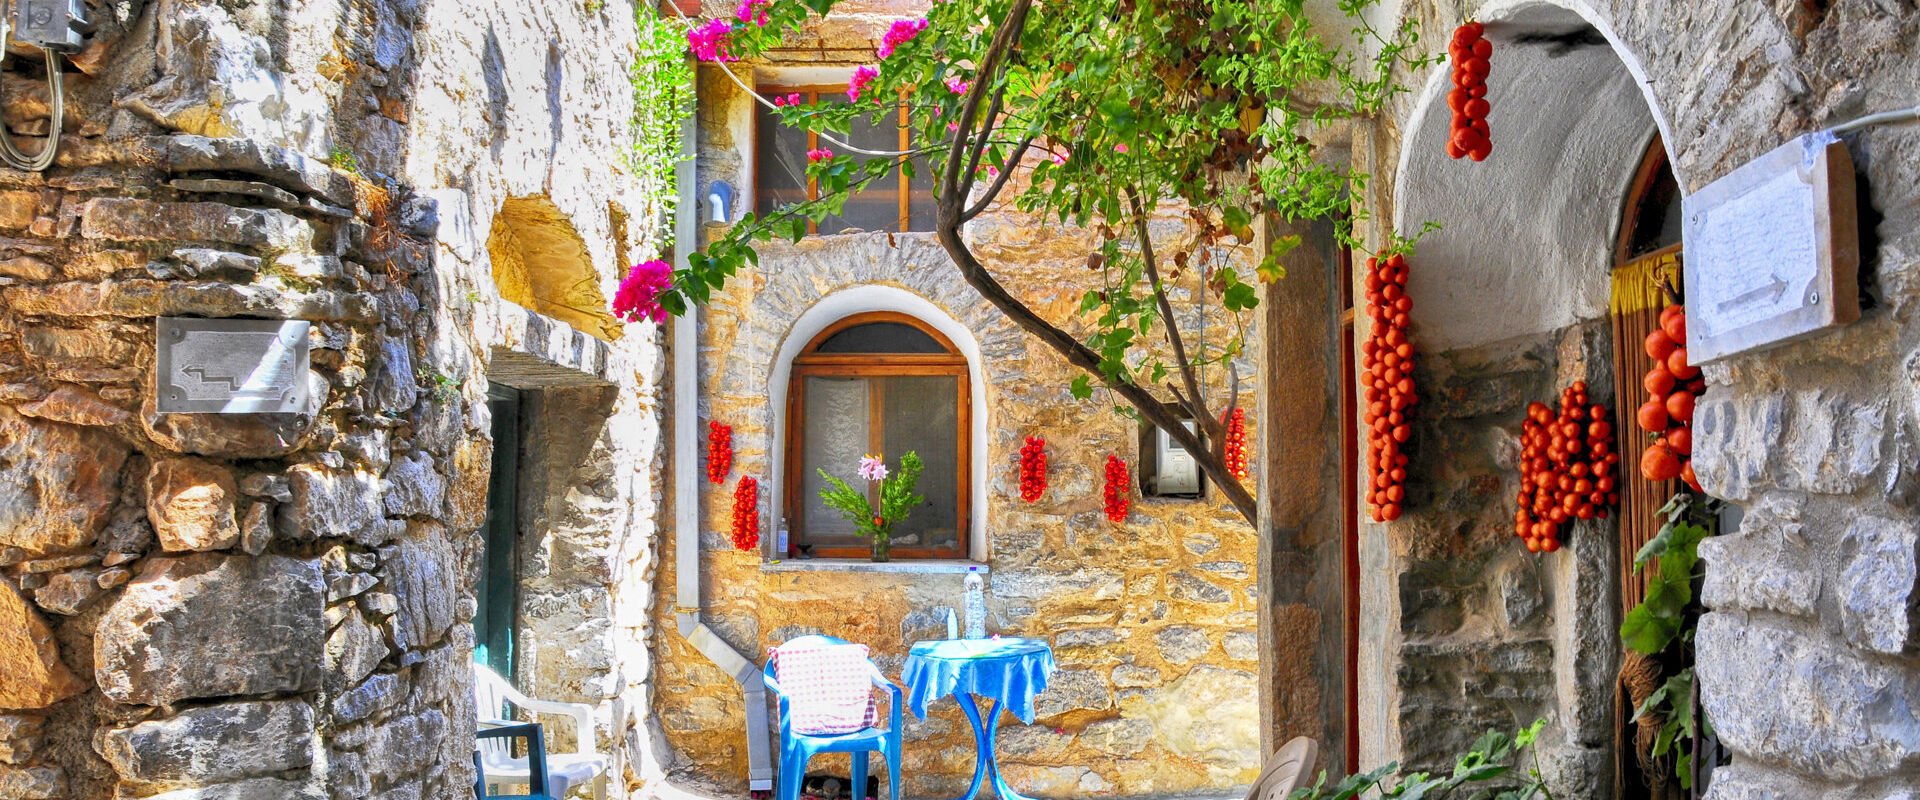 Mesta village, south Chios